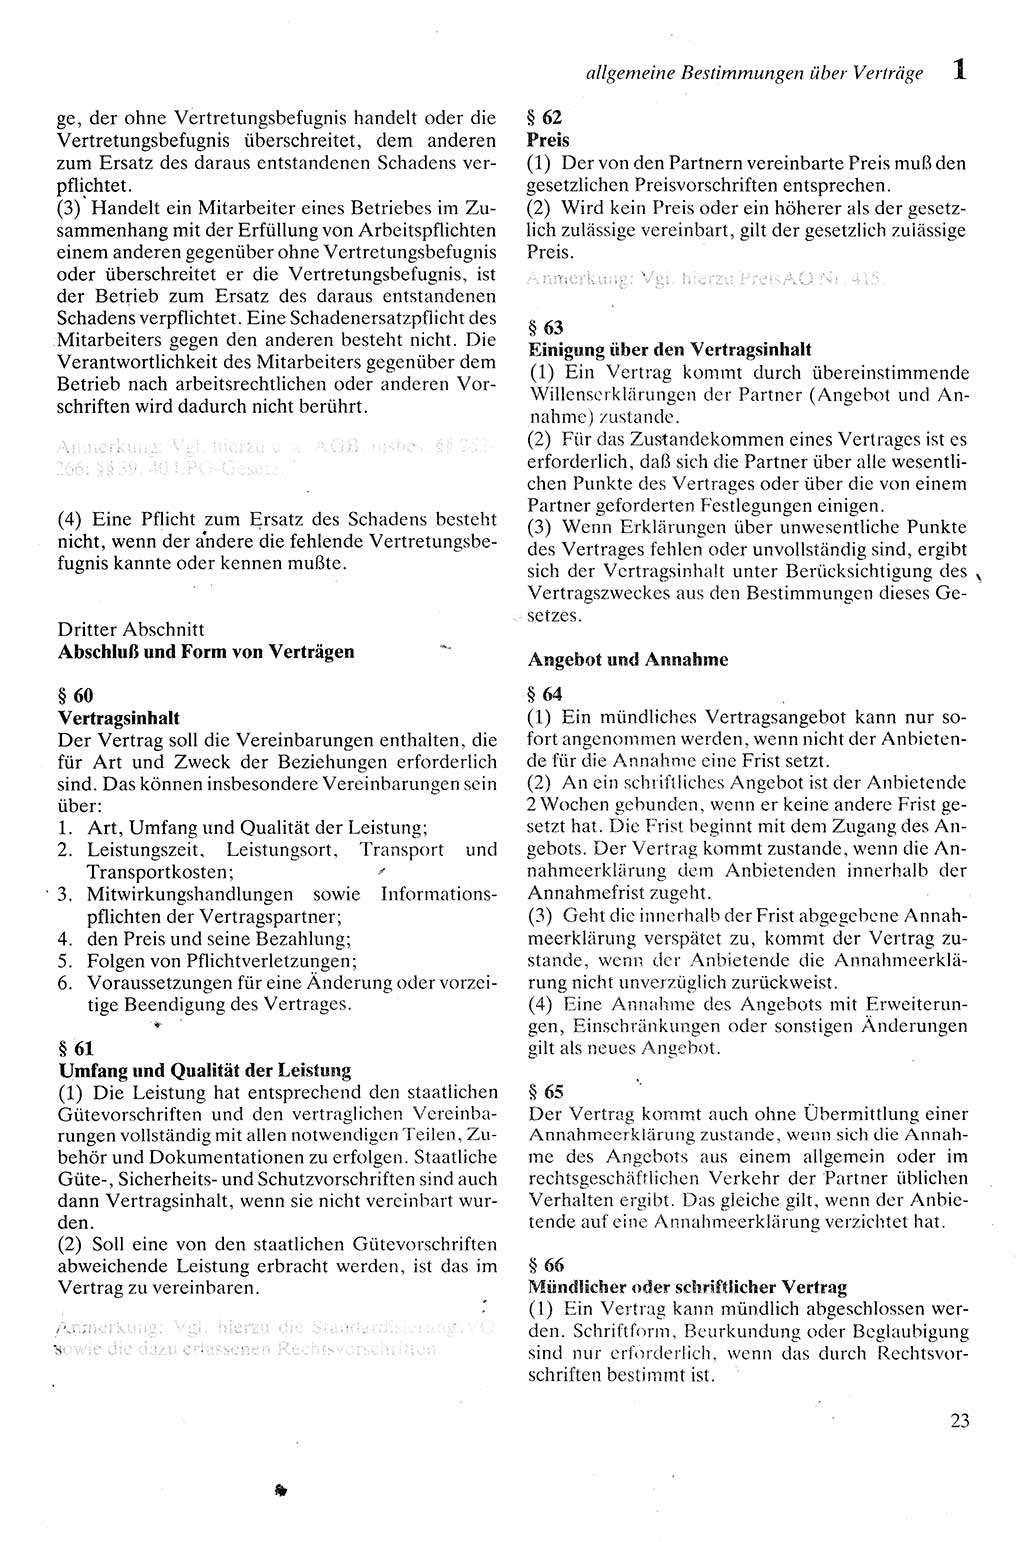 Zivilgesetzbuch (ZVG) sowie angrenzende Gesetze und Bestimmungen [Deutsche Demokratische Republik (DDR)] 1975, Seite 23 (ZGB Ges. Best. DDR 1975, S. 23)